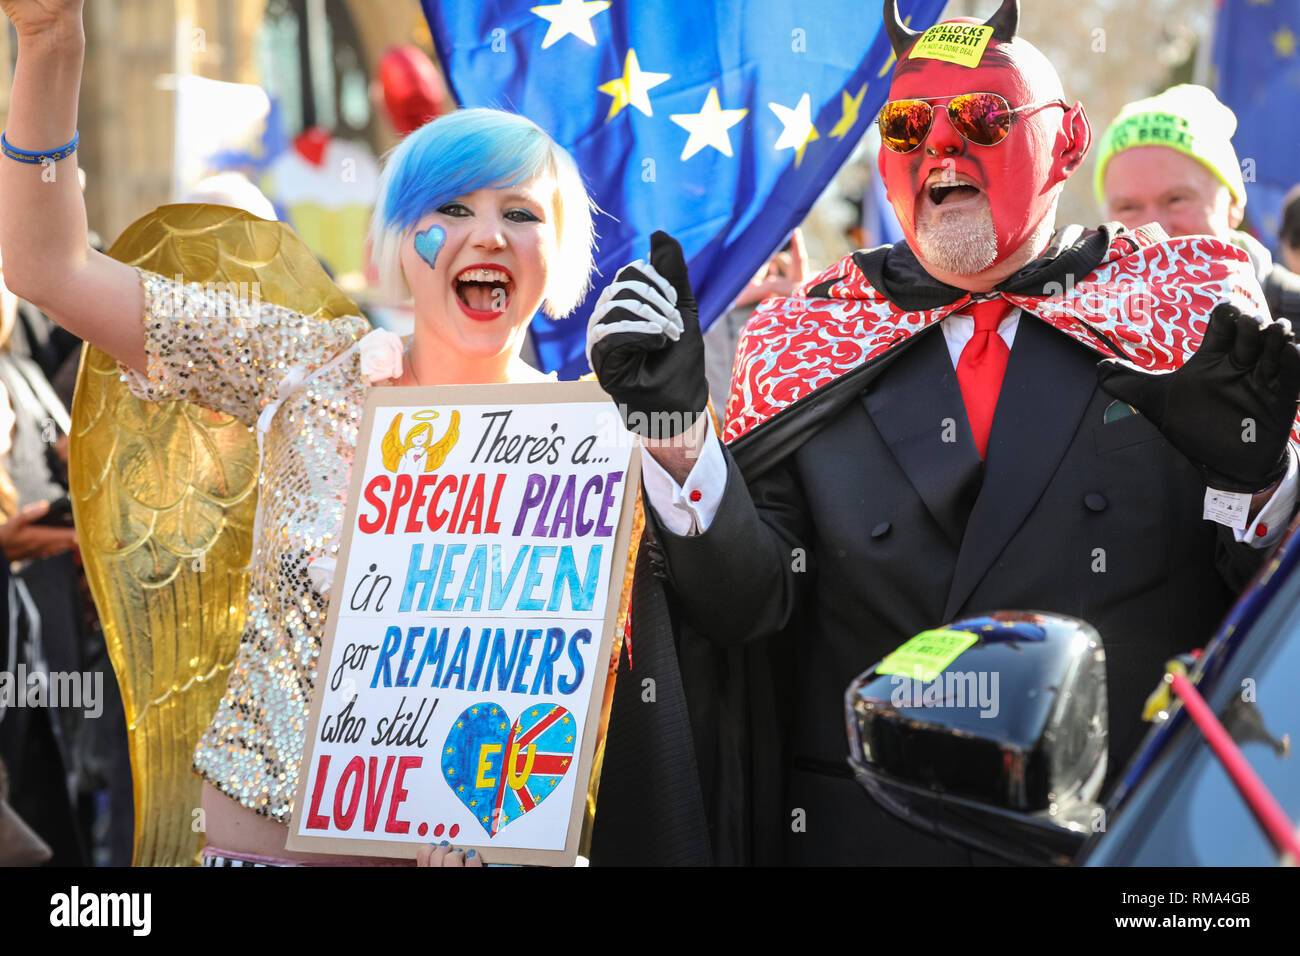 Westminster, Londres, Reino Unido. 14 Feb, 2019. Remainers han organizado un 'Falso' políticos automóvil, incluyendo Faux, Bojo Facob Rees-Mogg, un falso Farage, un títere de Teresa, y un "mal". A ellos se suman "UE Supergirl' Madeleina Kay (izquierda) Pro- y anti-Brexit protesta de manifestantes, agitar banderas y sostener pancartas fuera de las casas del parlamento y cerca del College Green plataformas mediáticas en Westminster. Muchas se han convertido en disfraces y coloridos trajes para hacer llegar su mensaje. Crédito: Imageplotter noticias y deportes/Alamy Live News Foto de stock